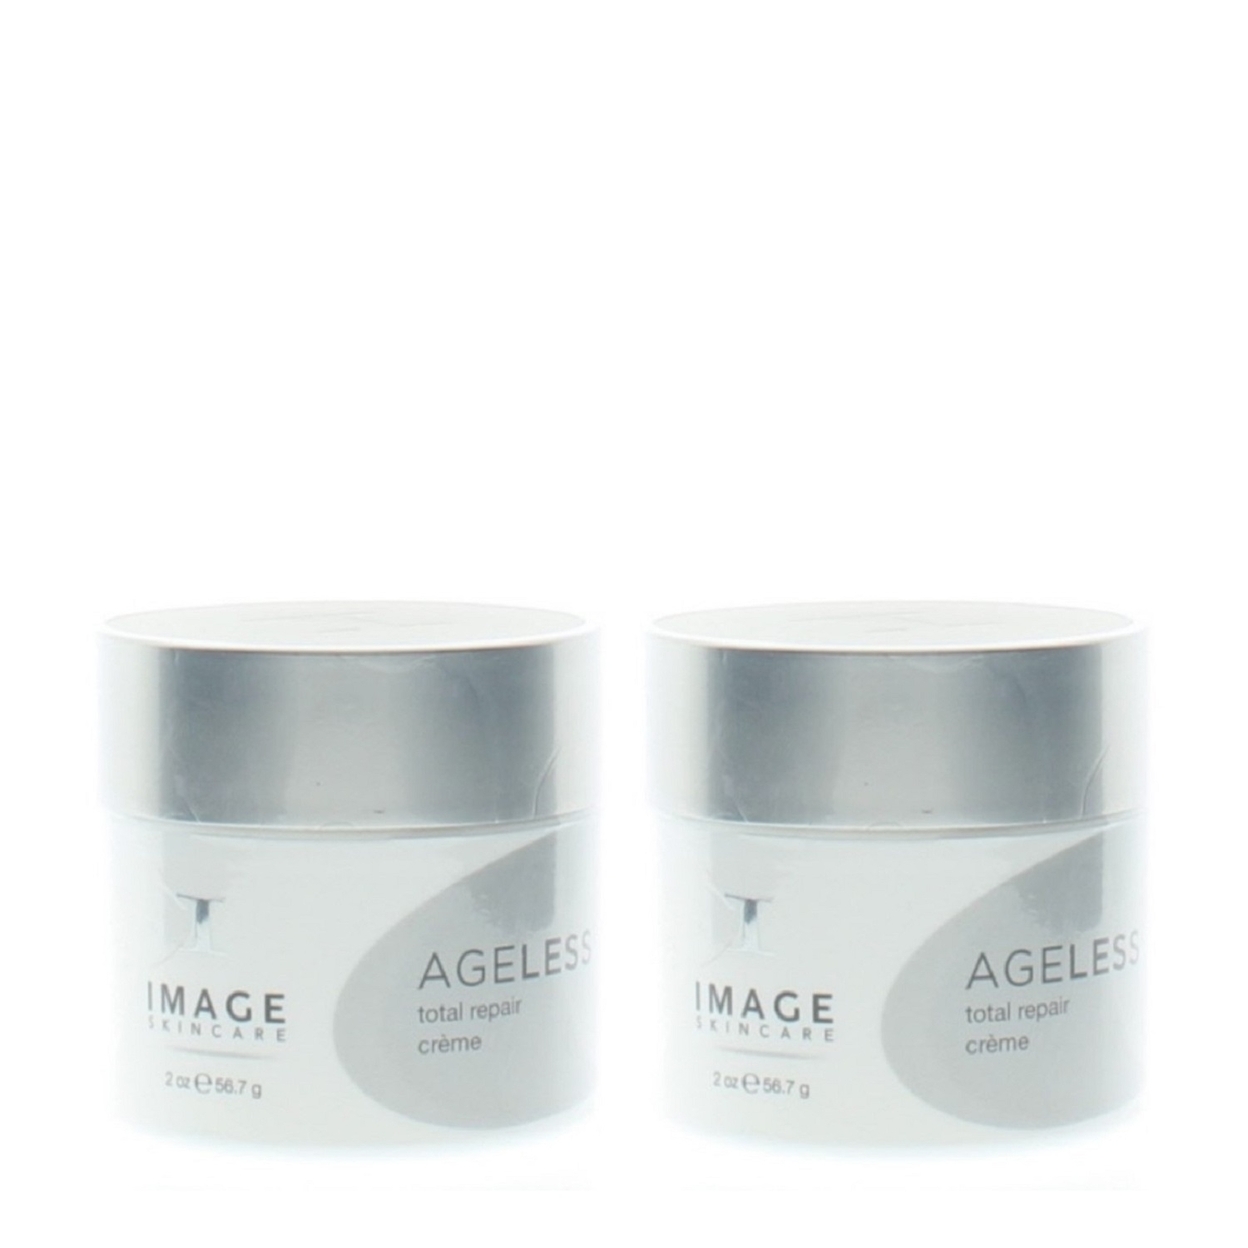 Image Skincare Ageless Total Repair Creme 2oz (2 Pack)